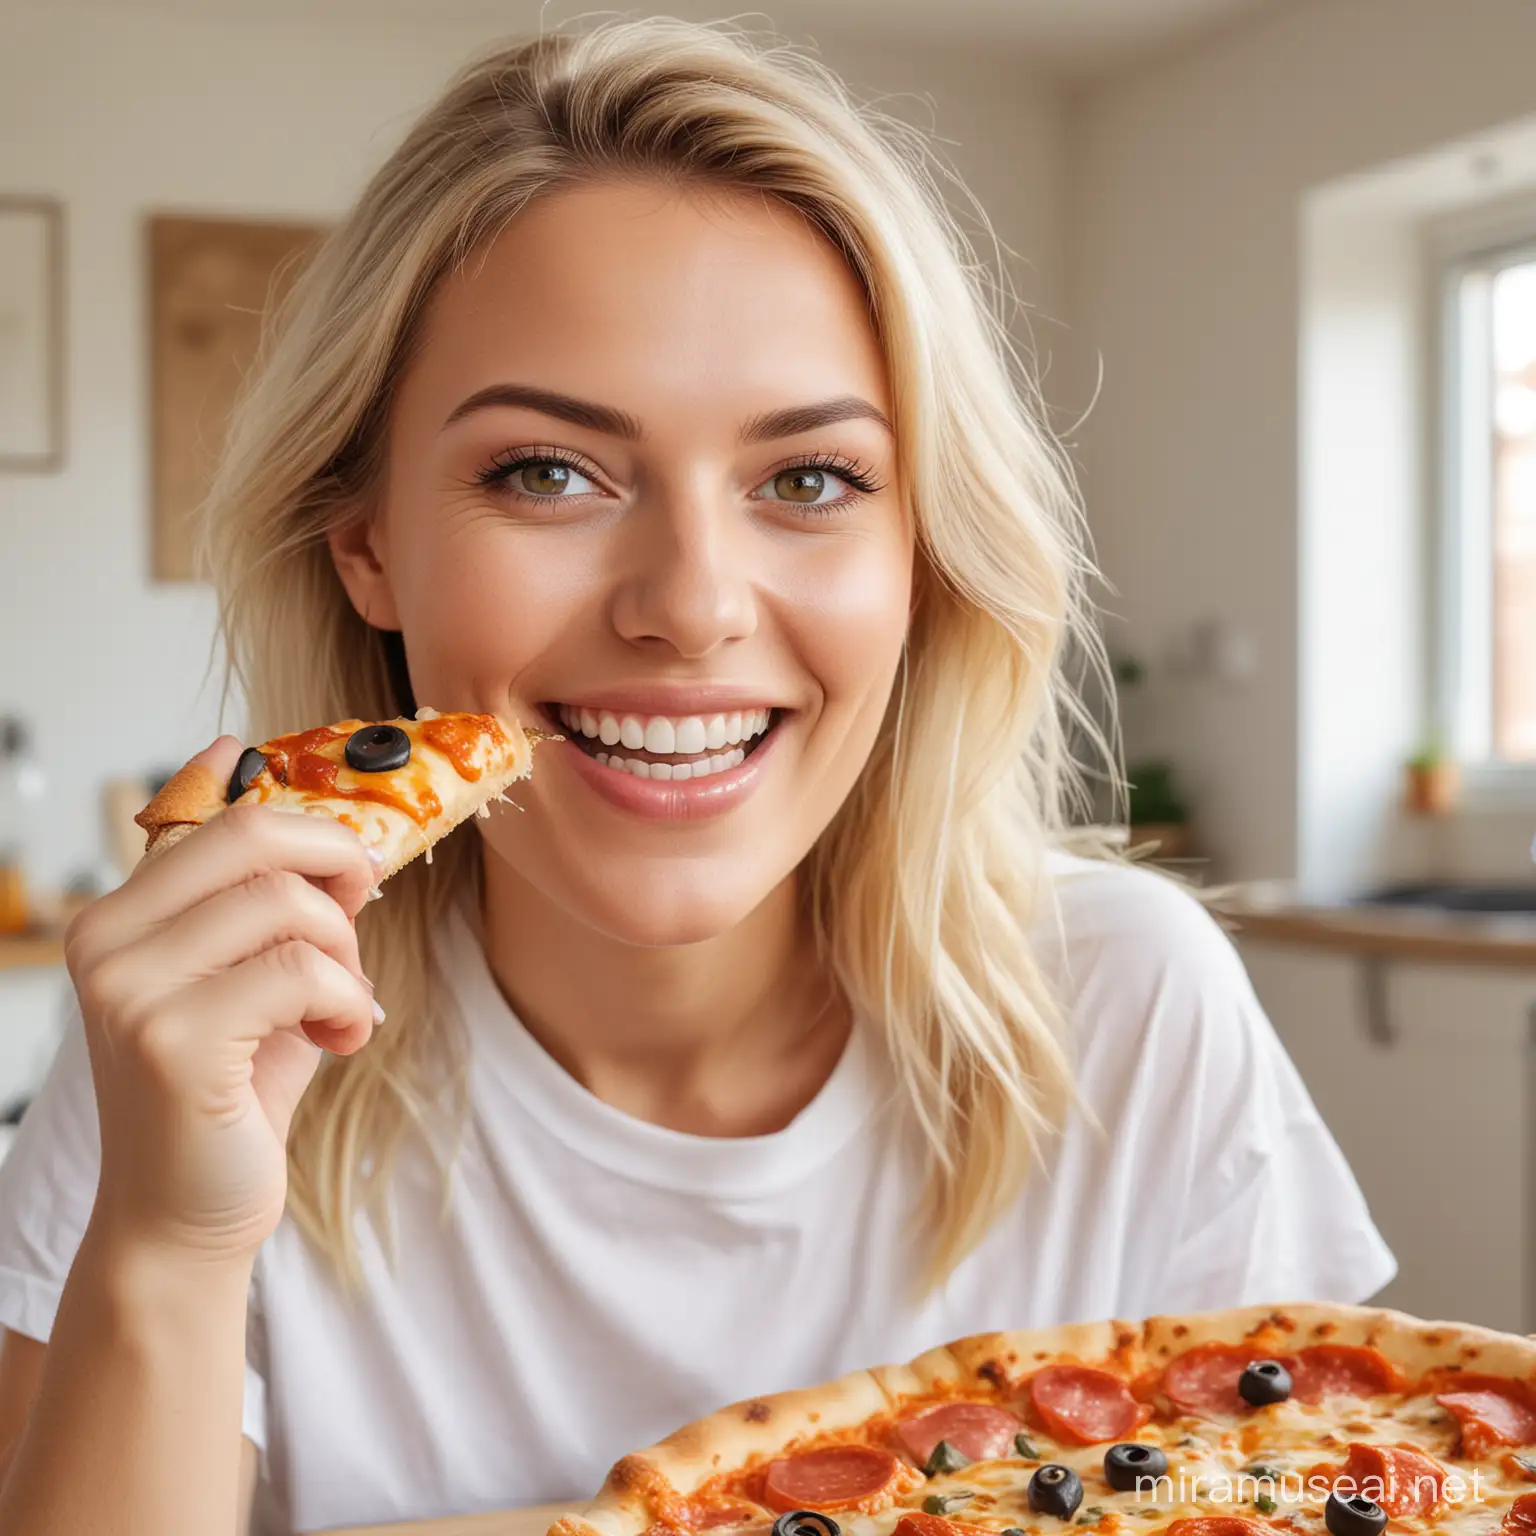 Erstelle mir ein Bild von einer blonden Frau, die Zuhause gerade ein Pizza Stück isst, dabei ihre Augen offen hat und strahlt und sehr glücklich aussieht. Im Hintergrund sieht man eine moderne helle Wohnung. 